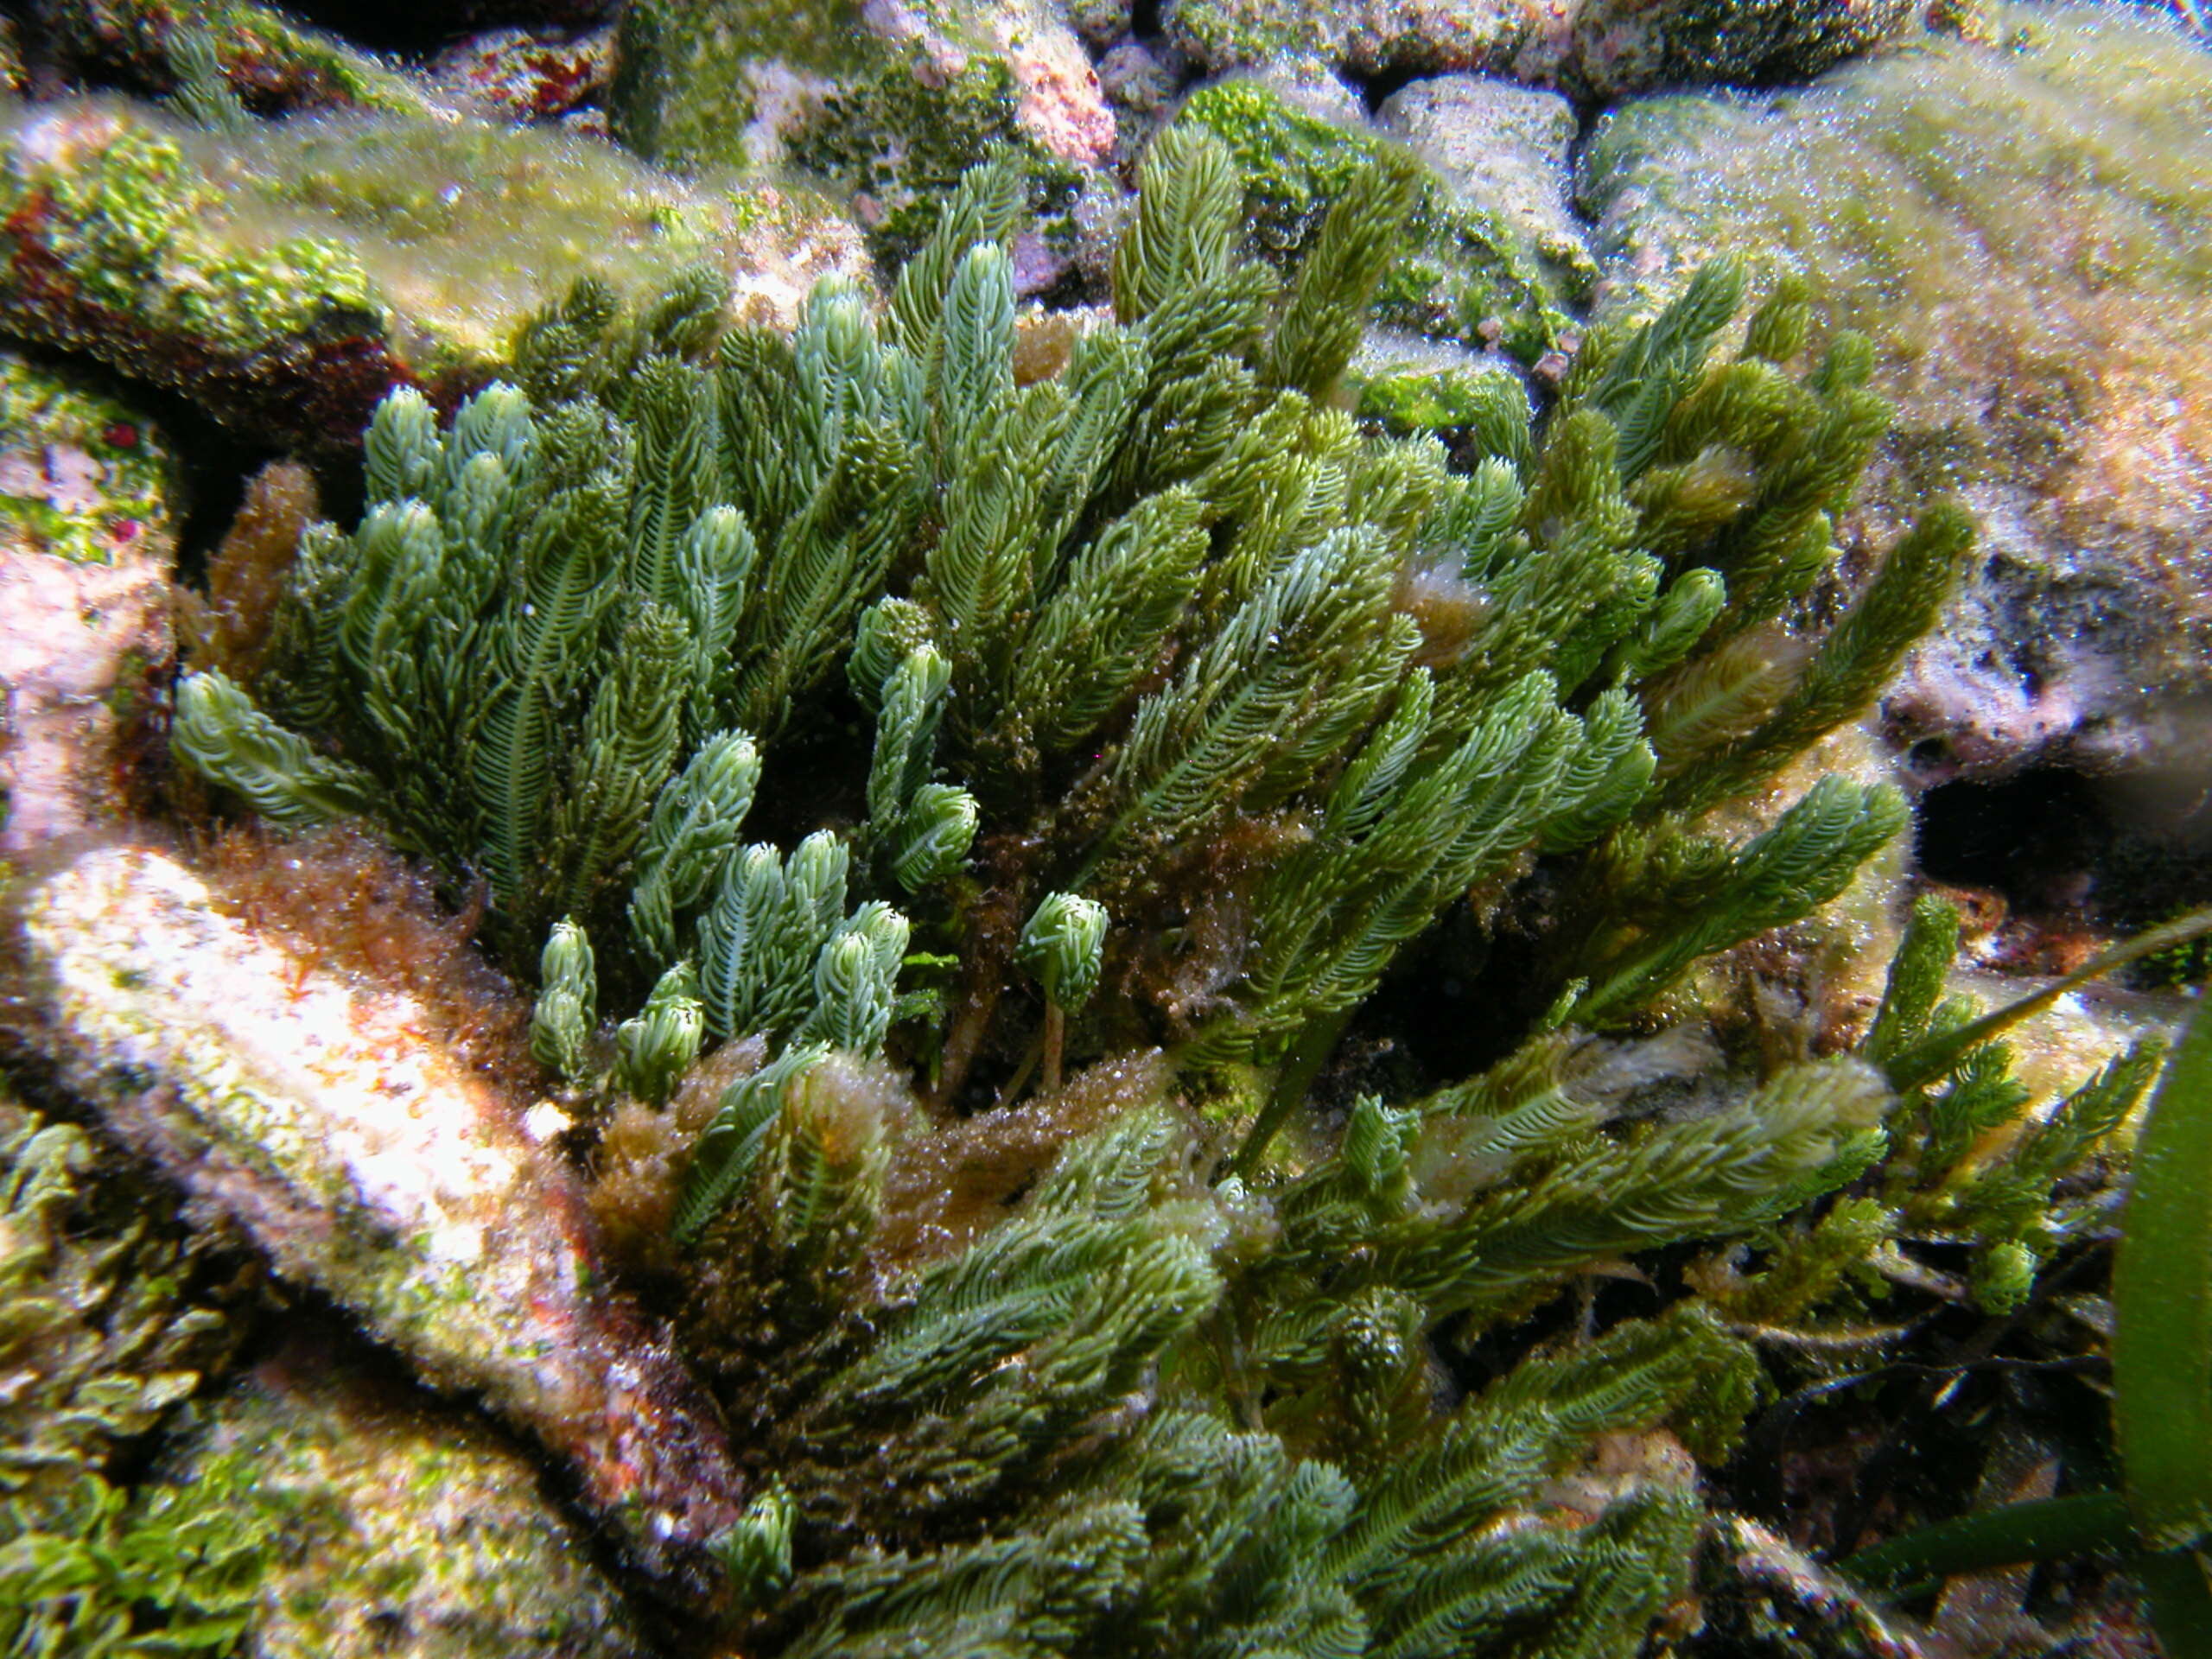 Image of chlorophytes